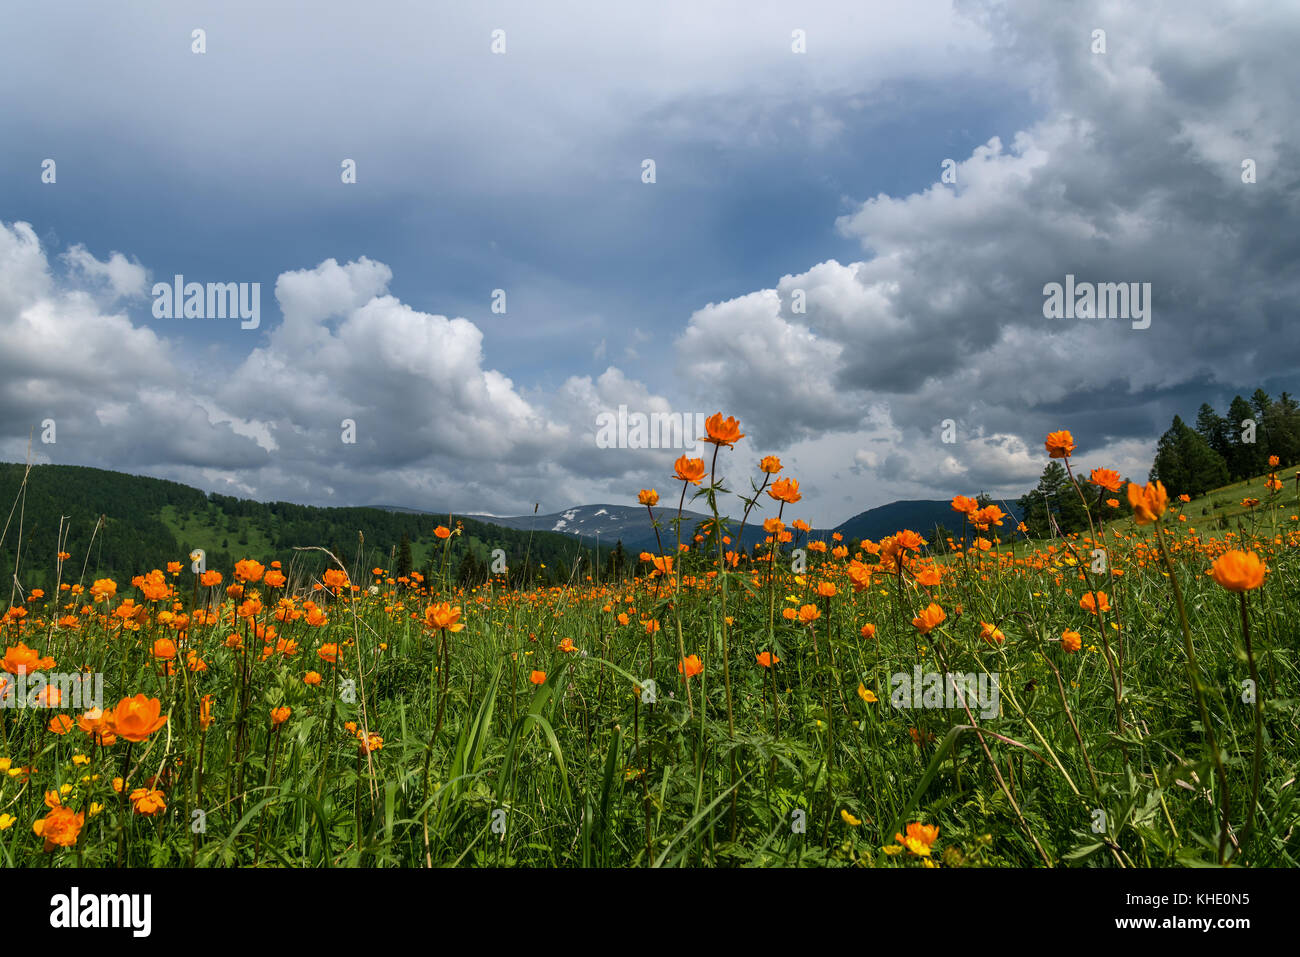 Schöne Berglandschaft mit orangefarbenen Blumen in der Wiese auf einem Hintergrund von Bergen, Wald und blauer Himmel mit Wolken Stockfoto